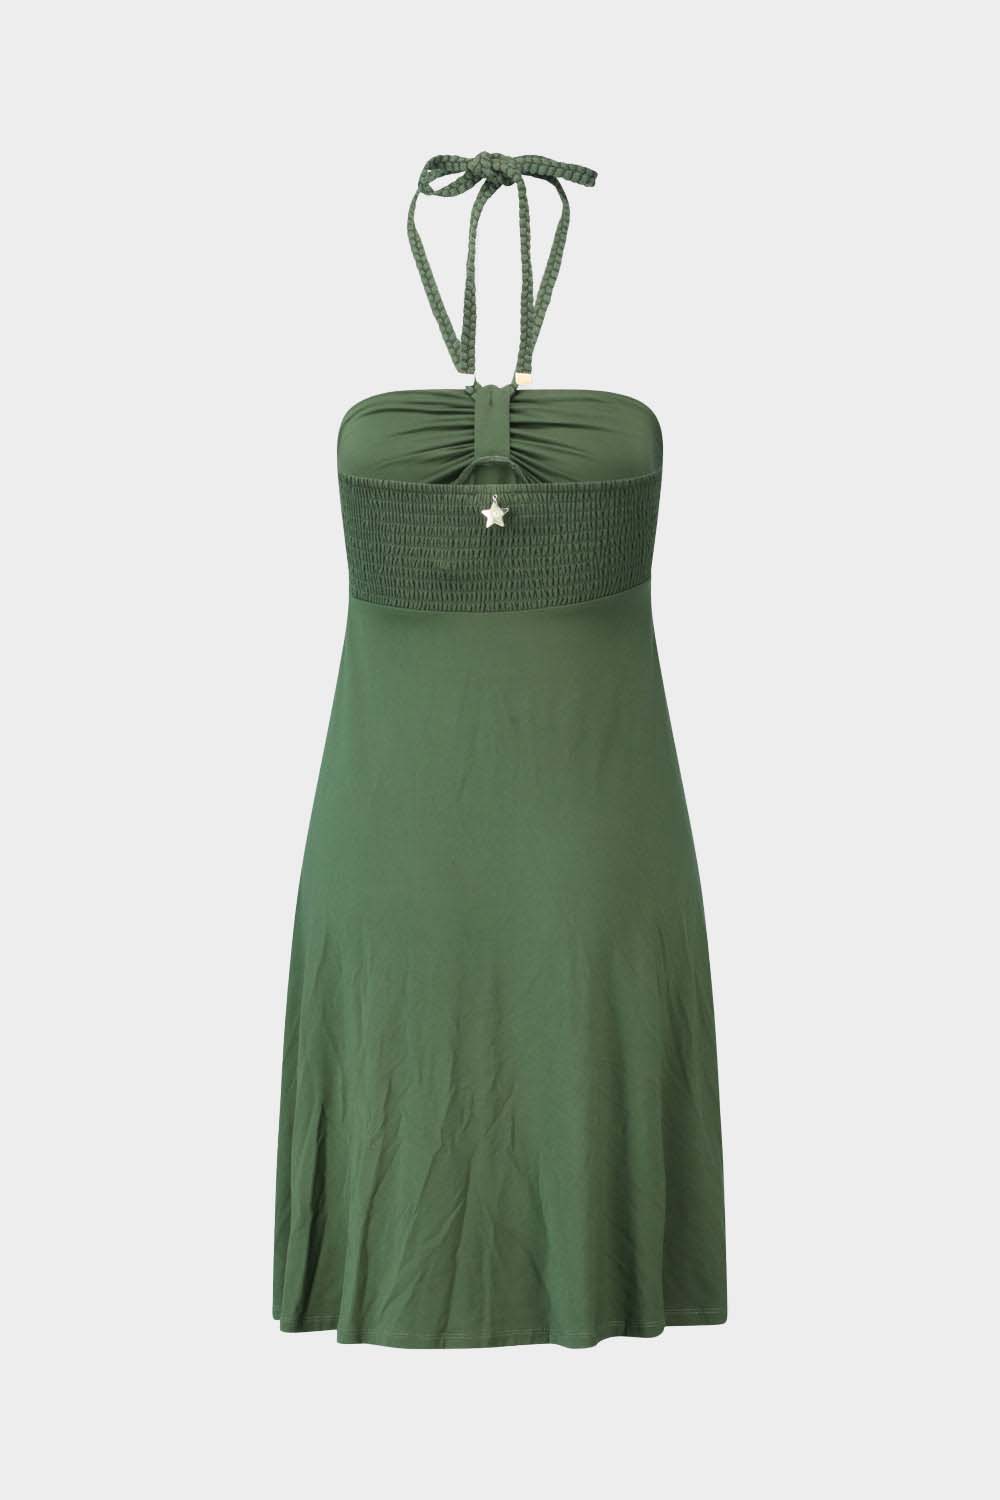 שמלה קצרה לנשים תכשיט כוכב LIU JO Vendome online | ונדום .